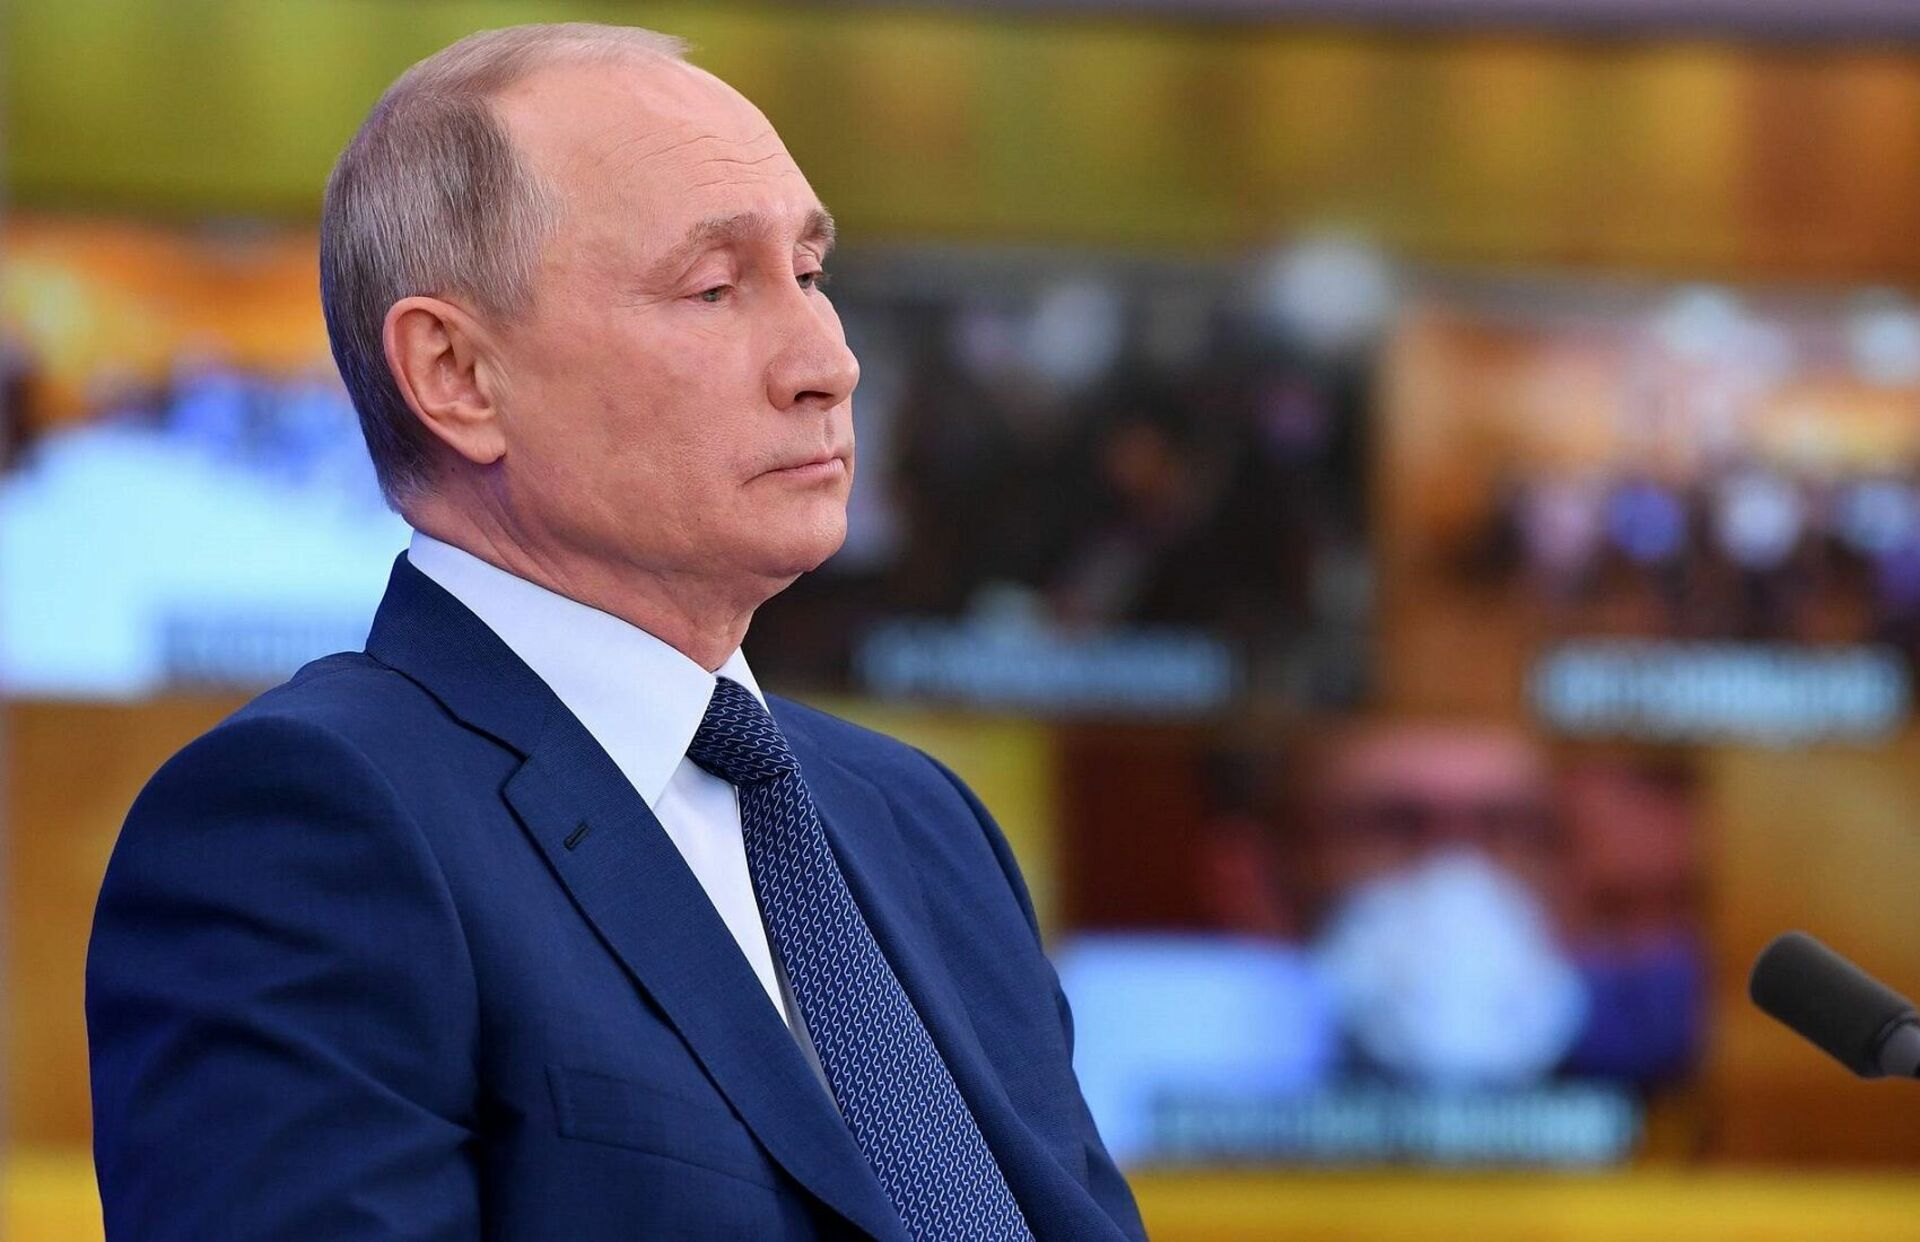 Путин разрешил изымать активы США в России